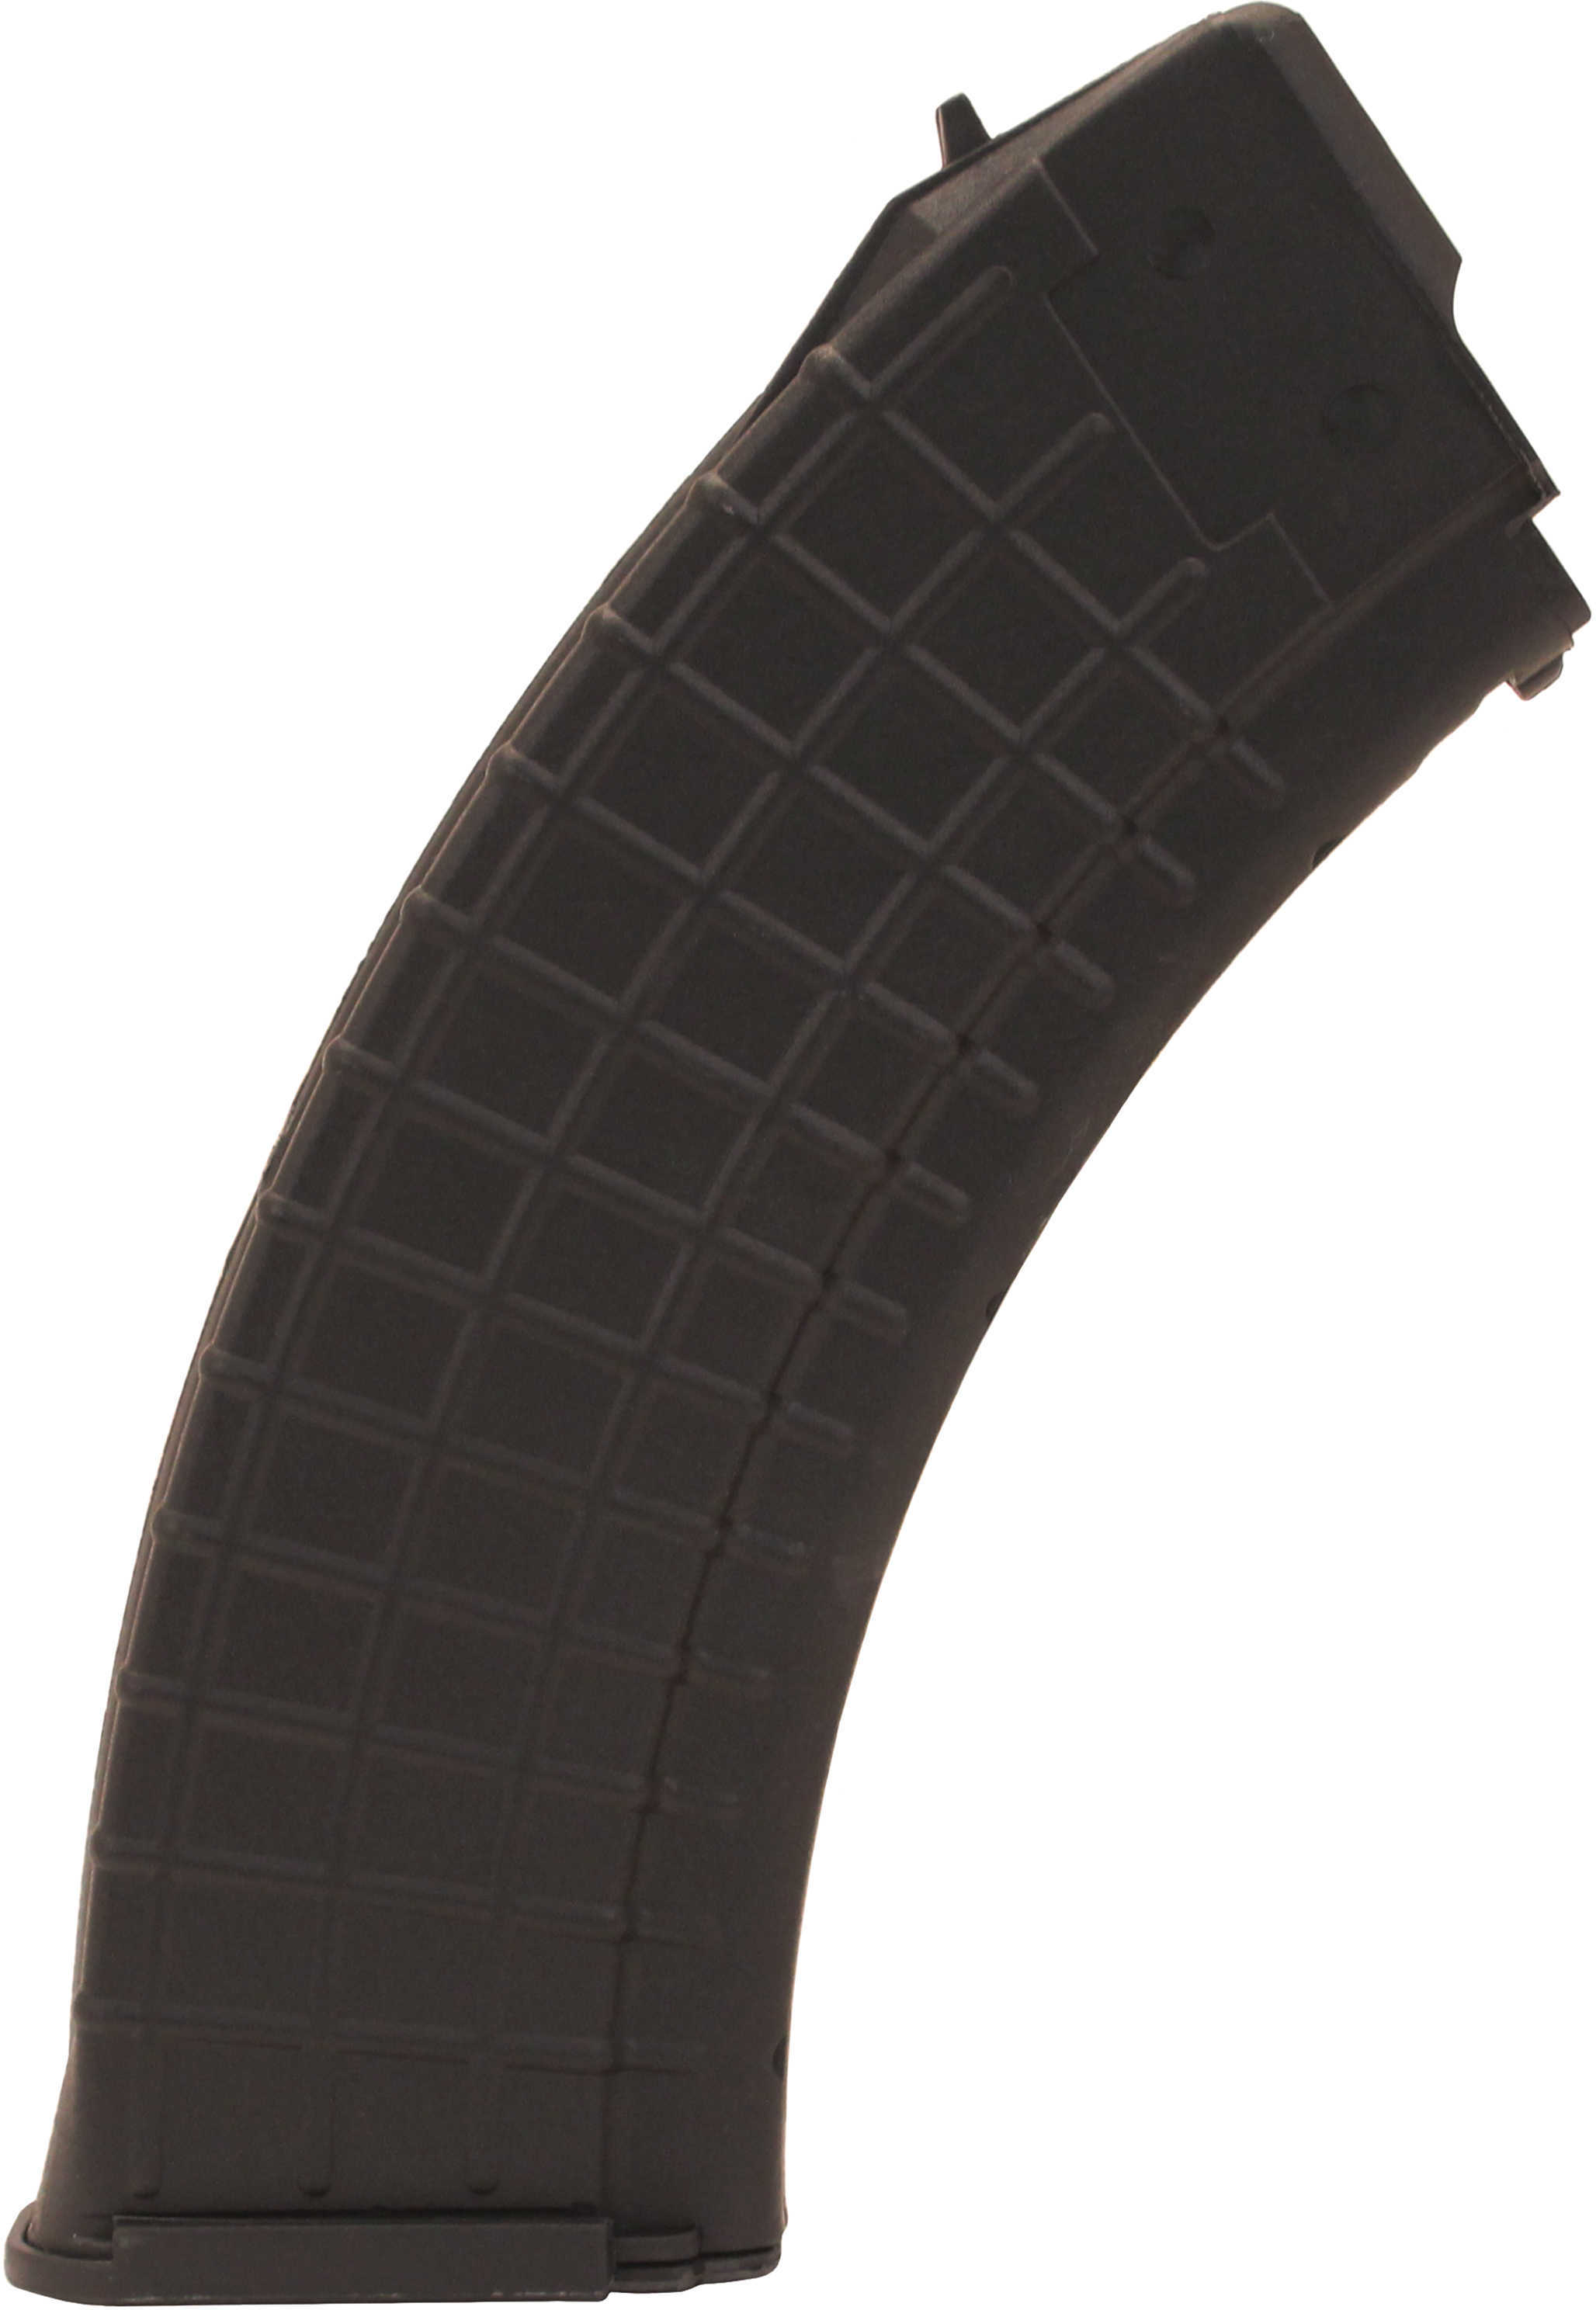 ProMag AK-47 Magazine, 7.62X39, 30 Round Black, Polymer AK-A1